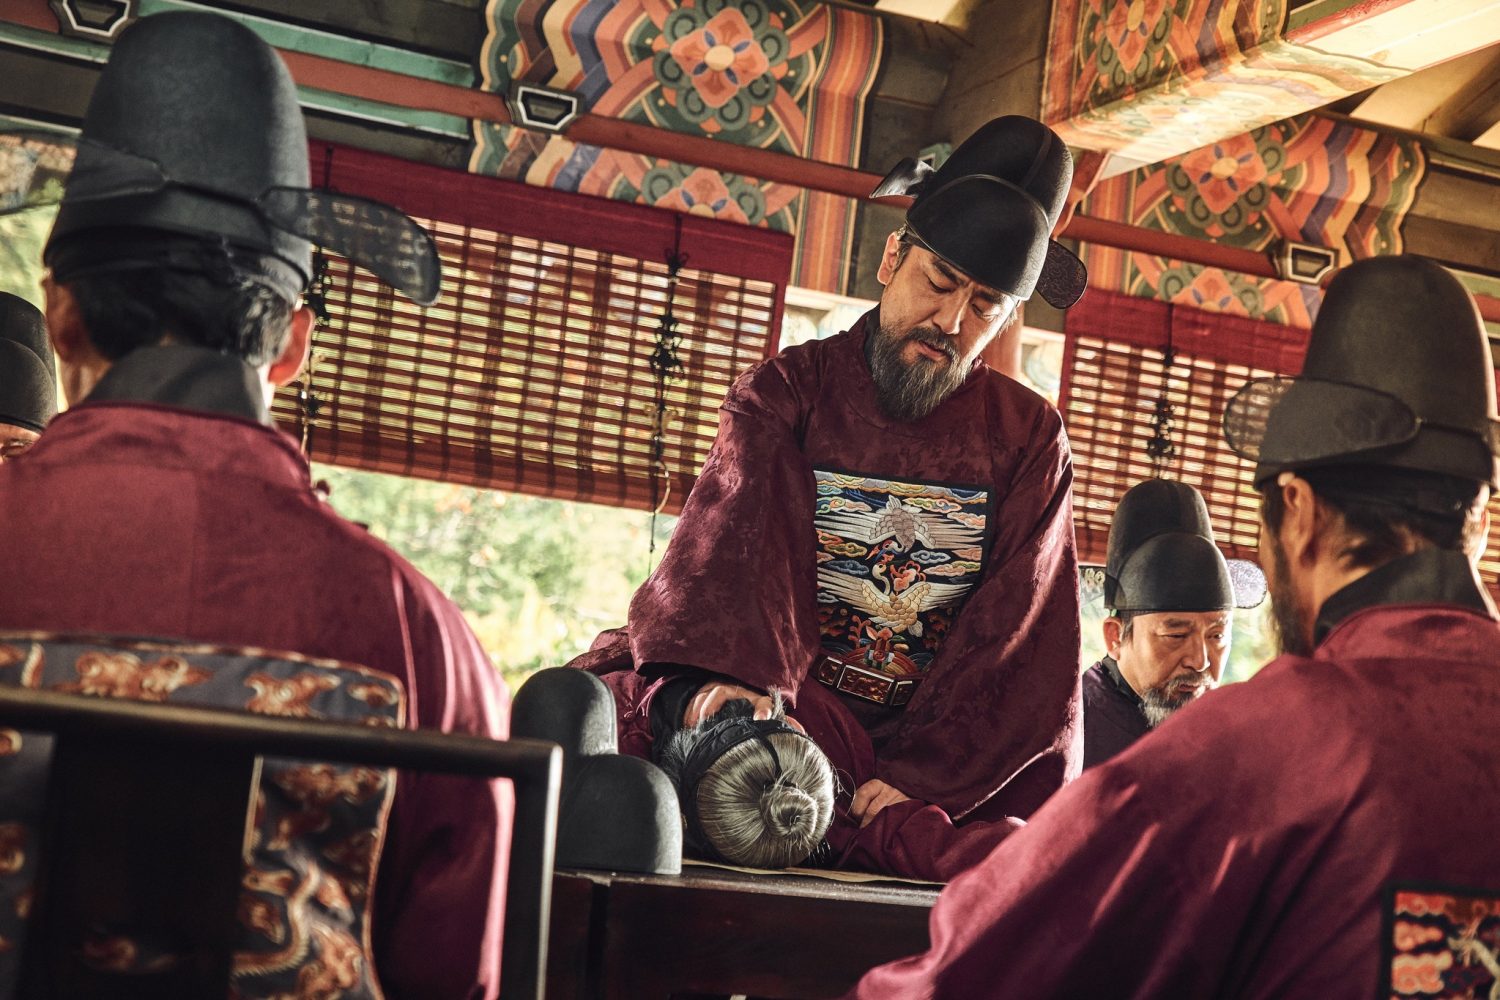 Ryu Seung Ryong phim Vương triều xác sống – Kingdom (2019)